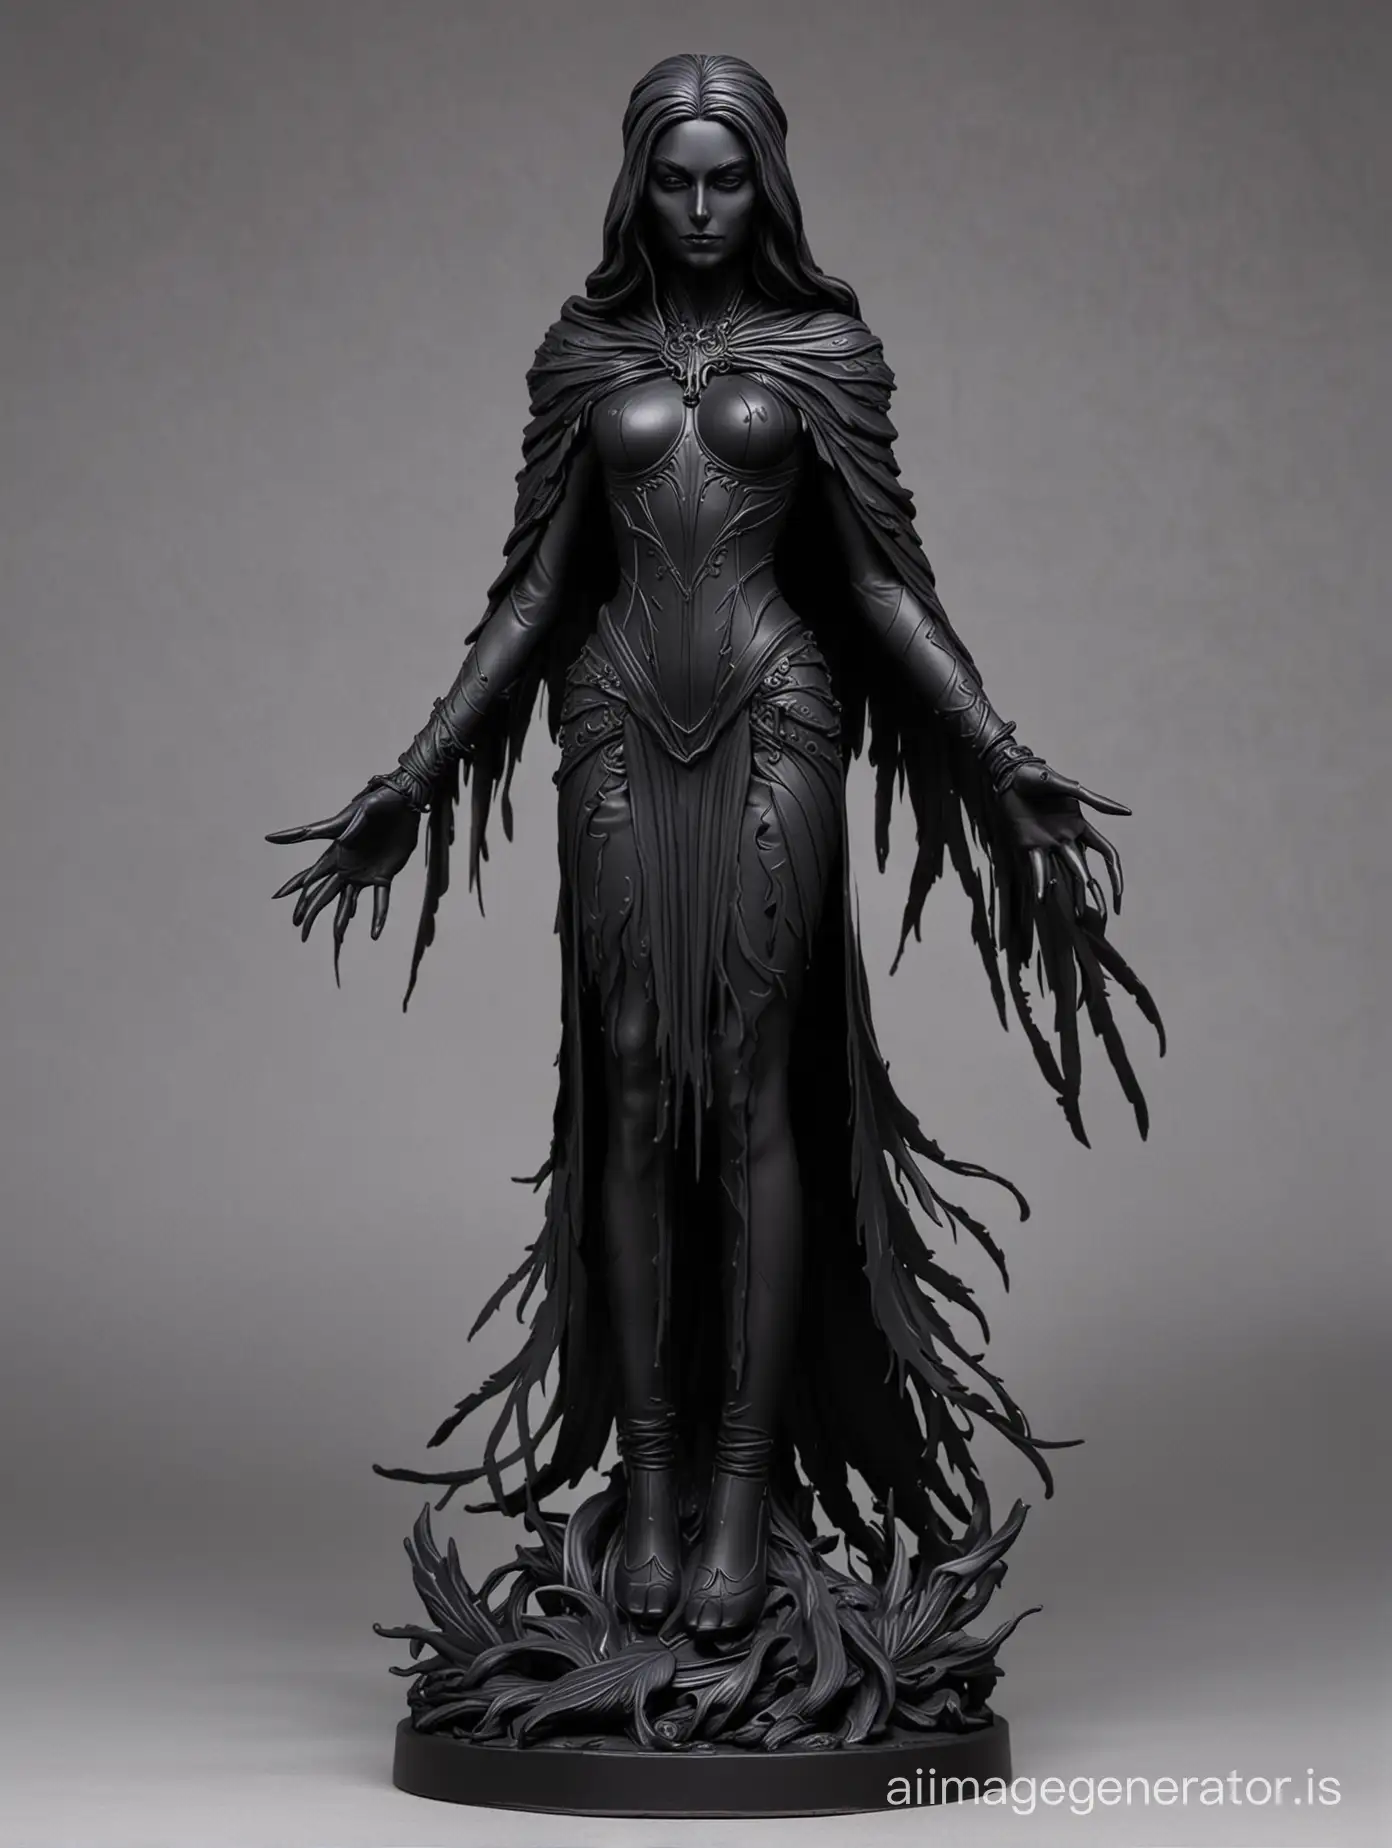 Raven queen shadow figure